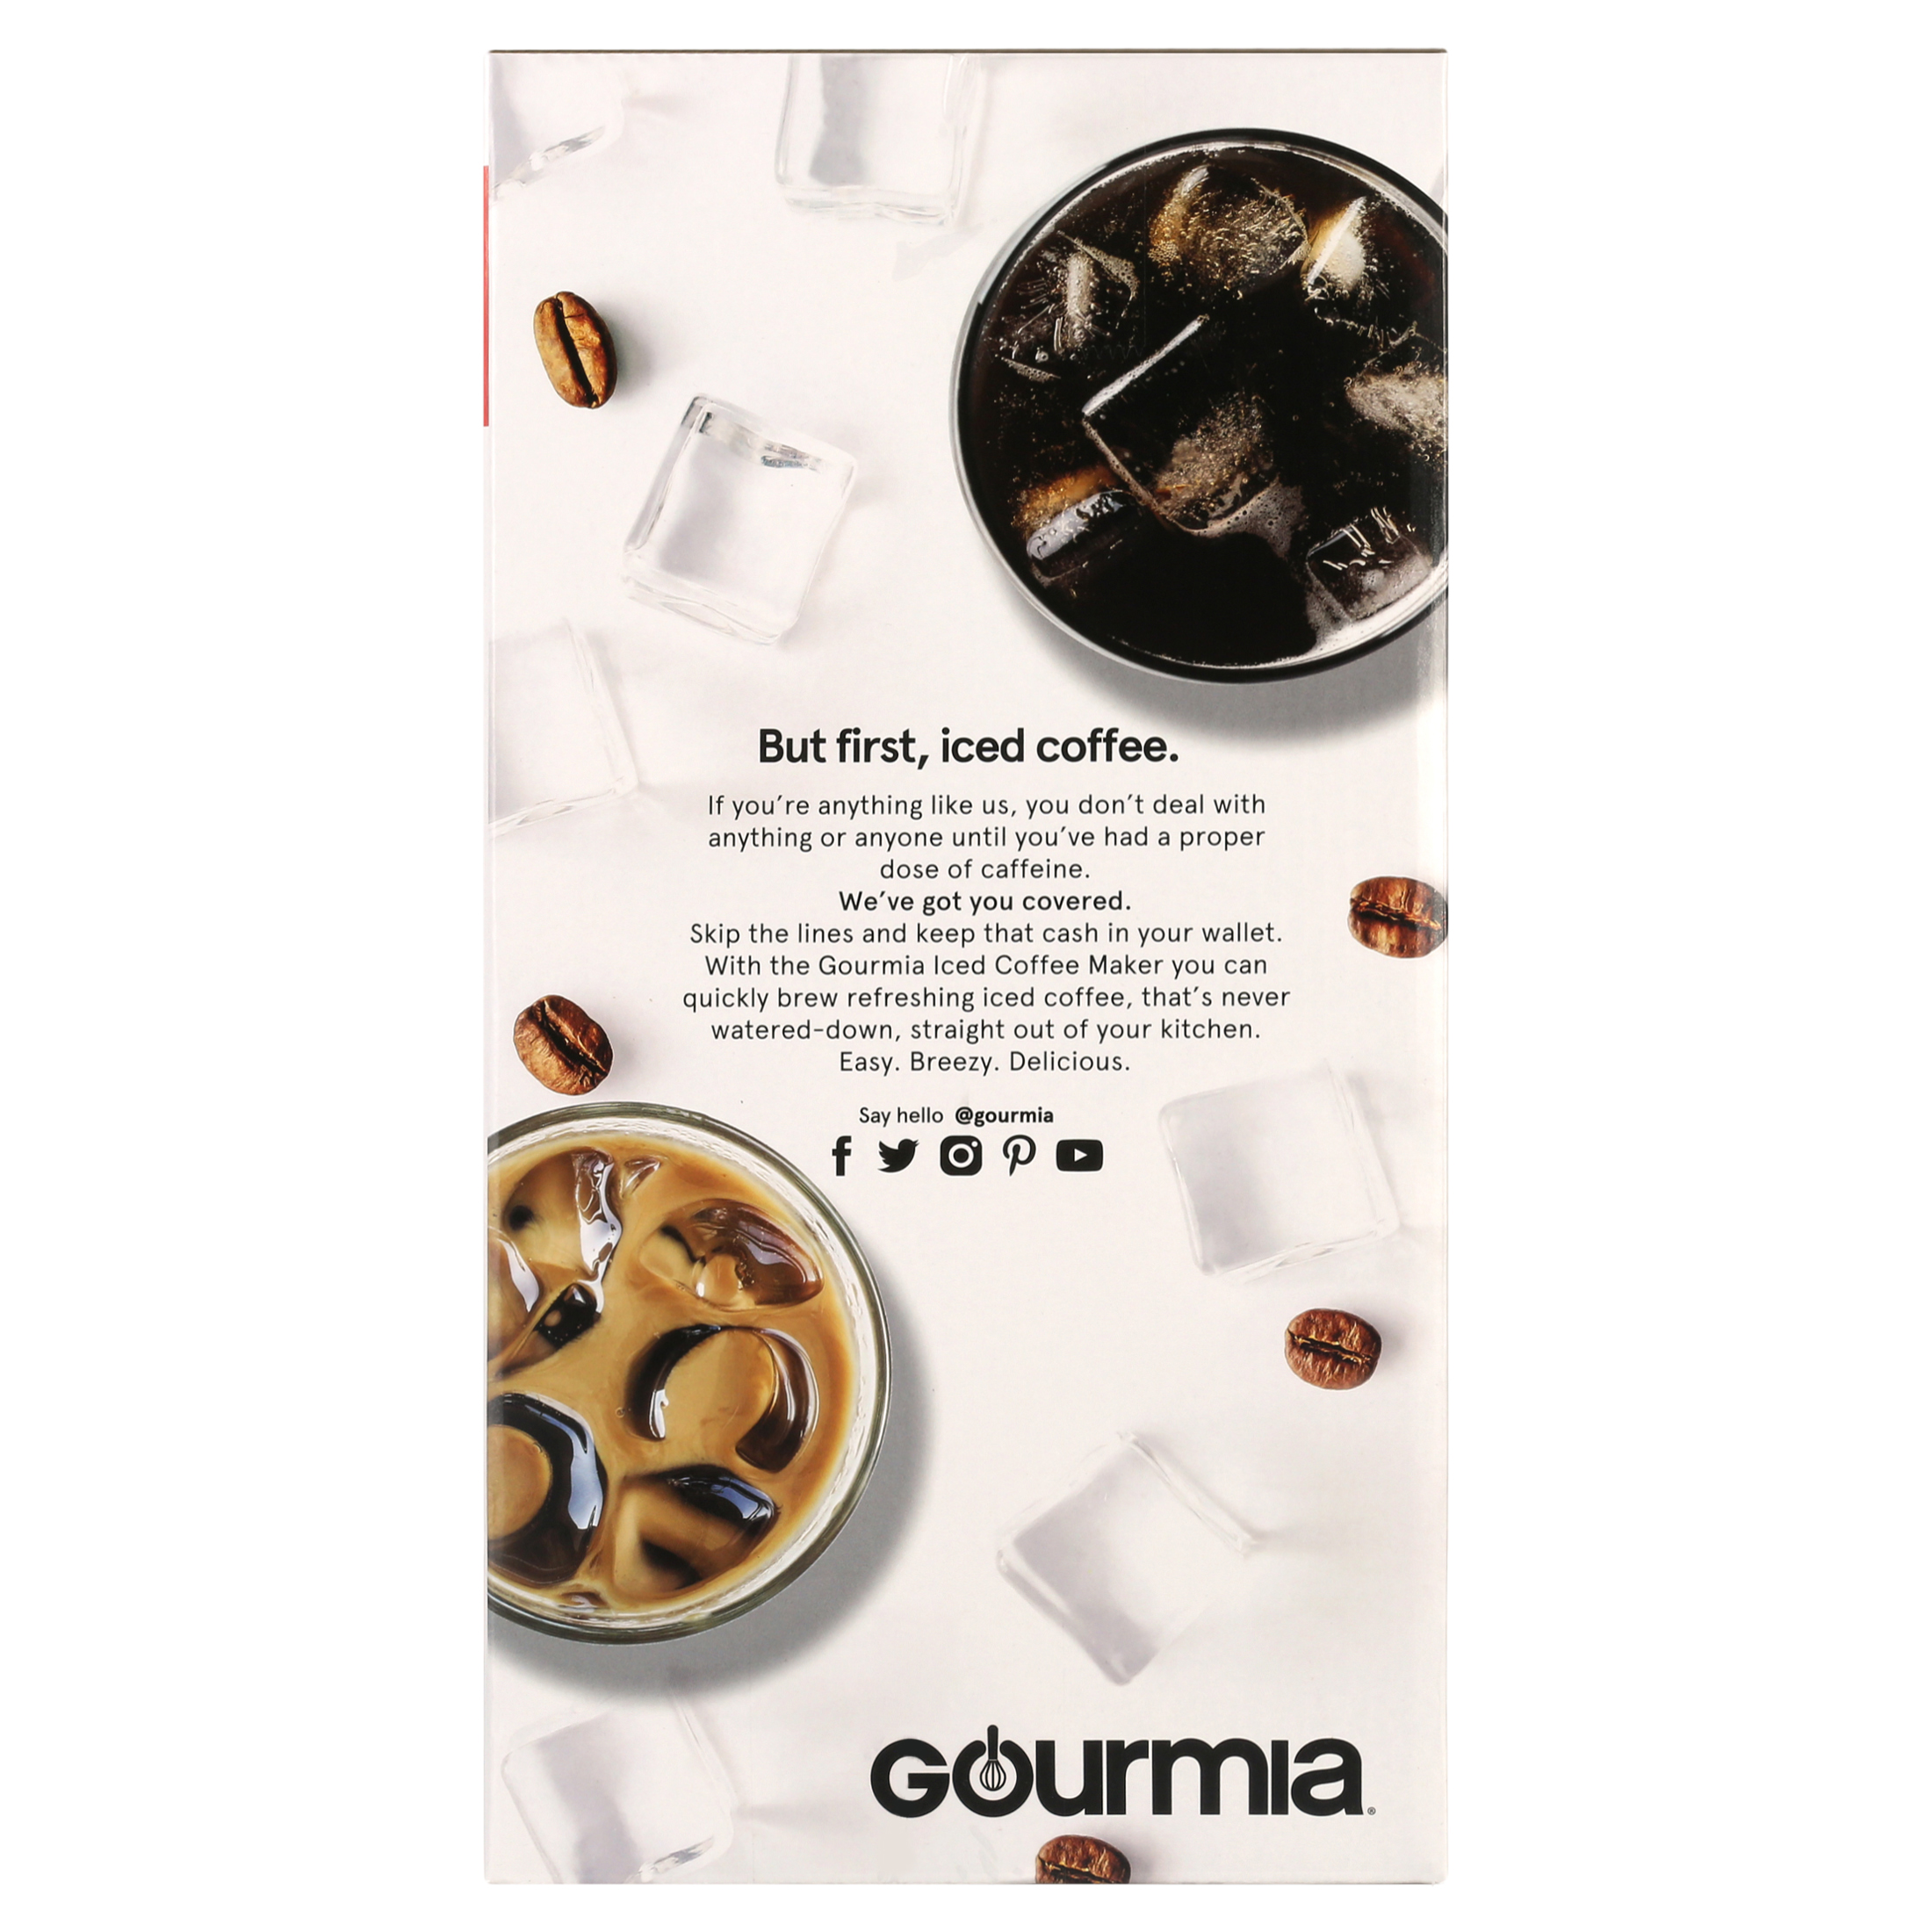 Gourmia Iced Coffee Maker with 25 fl oz. Reusable Tumbler, White - image 6 of 11